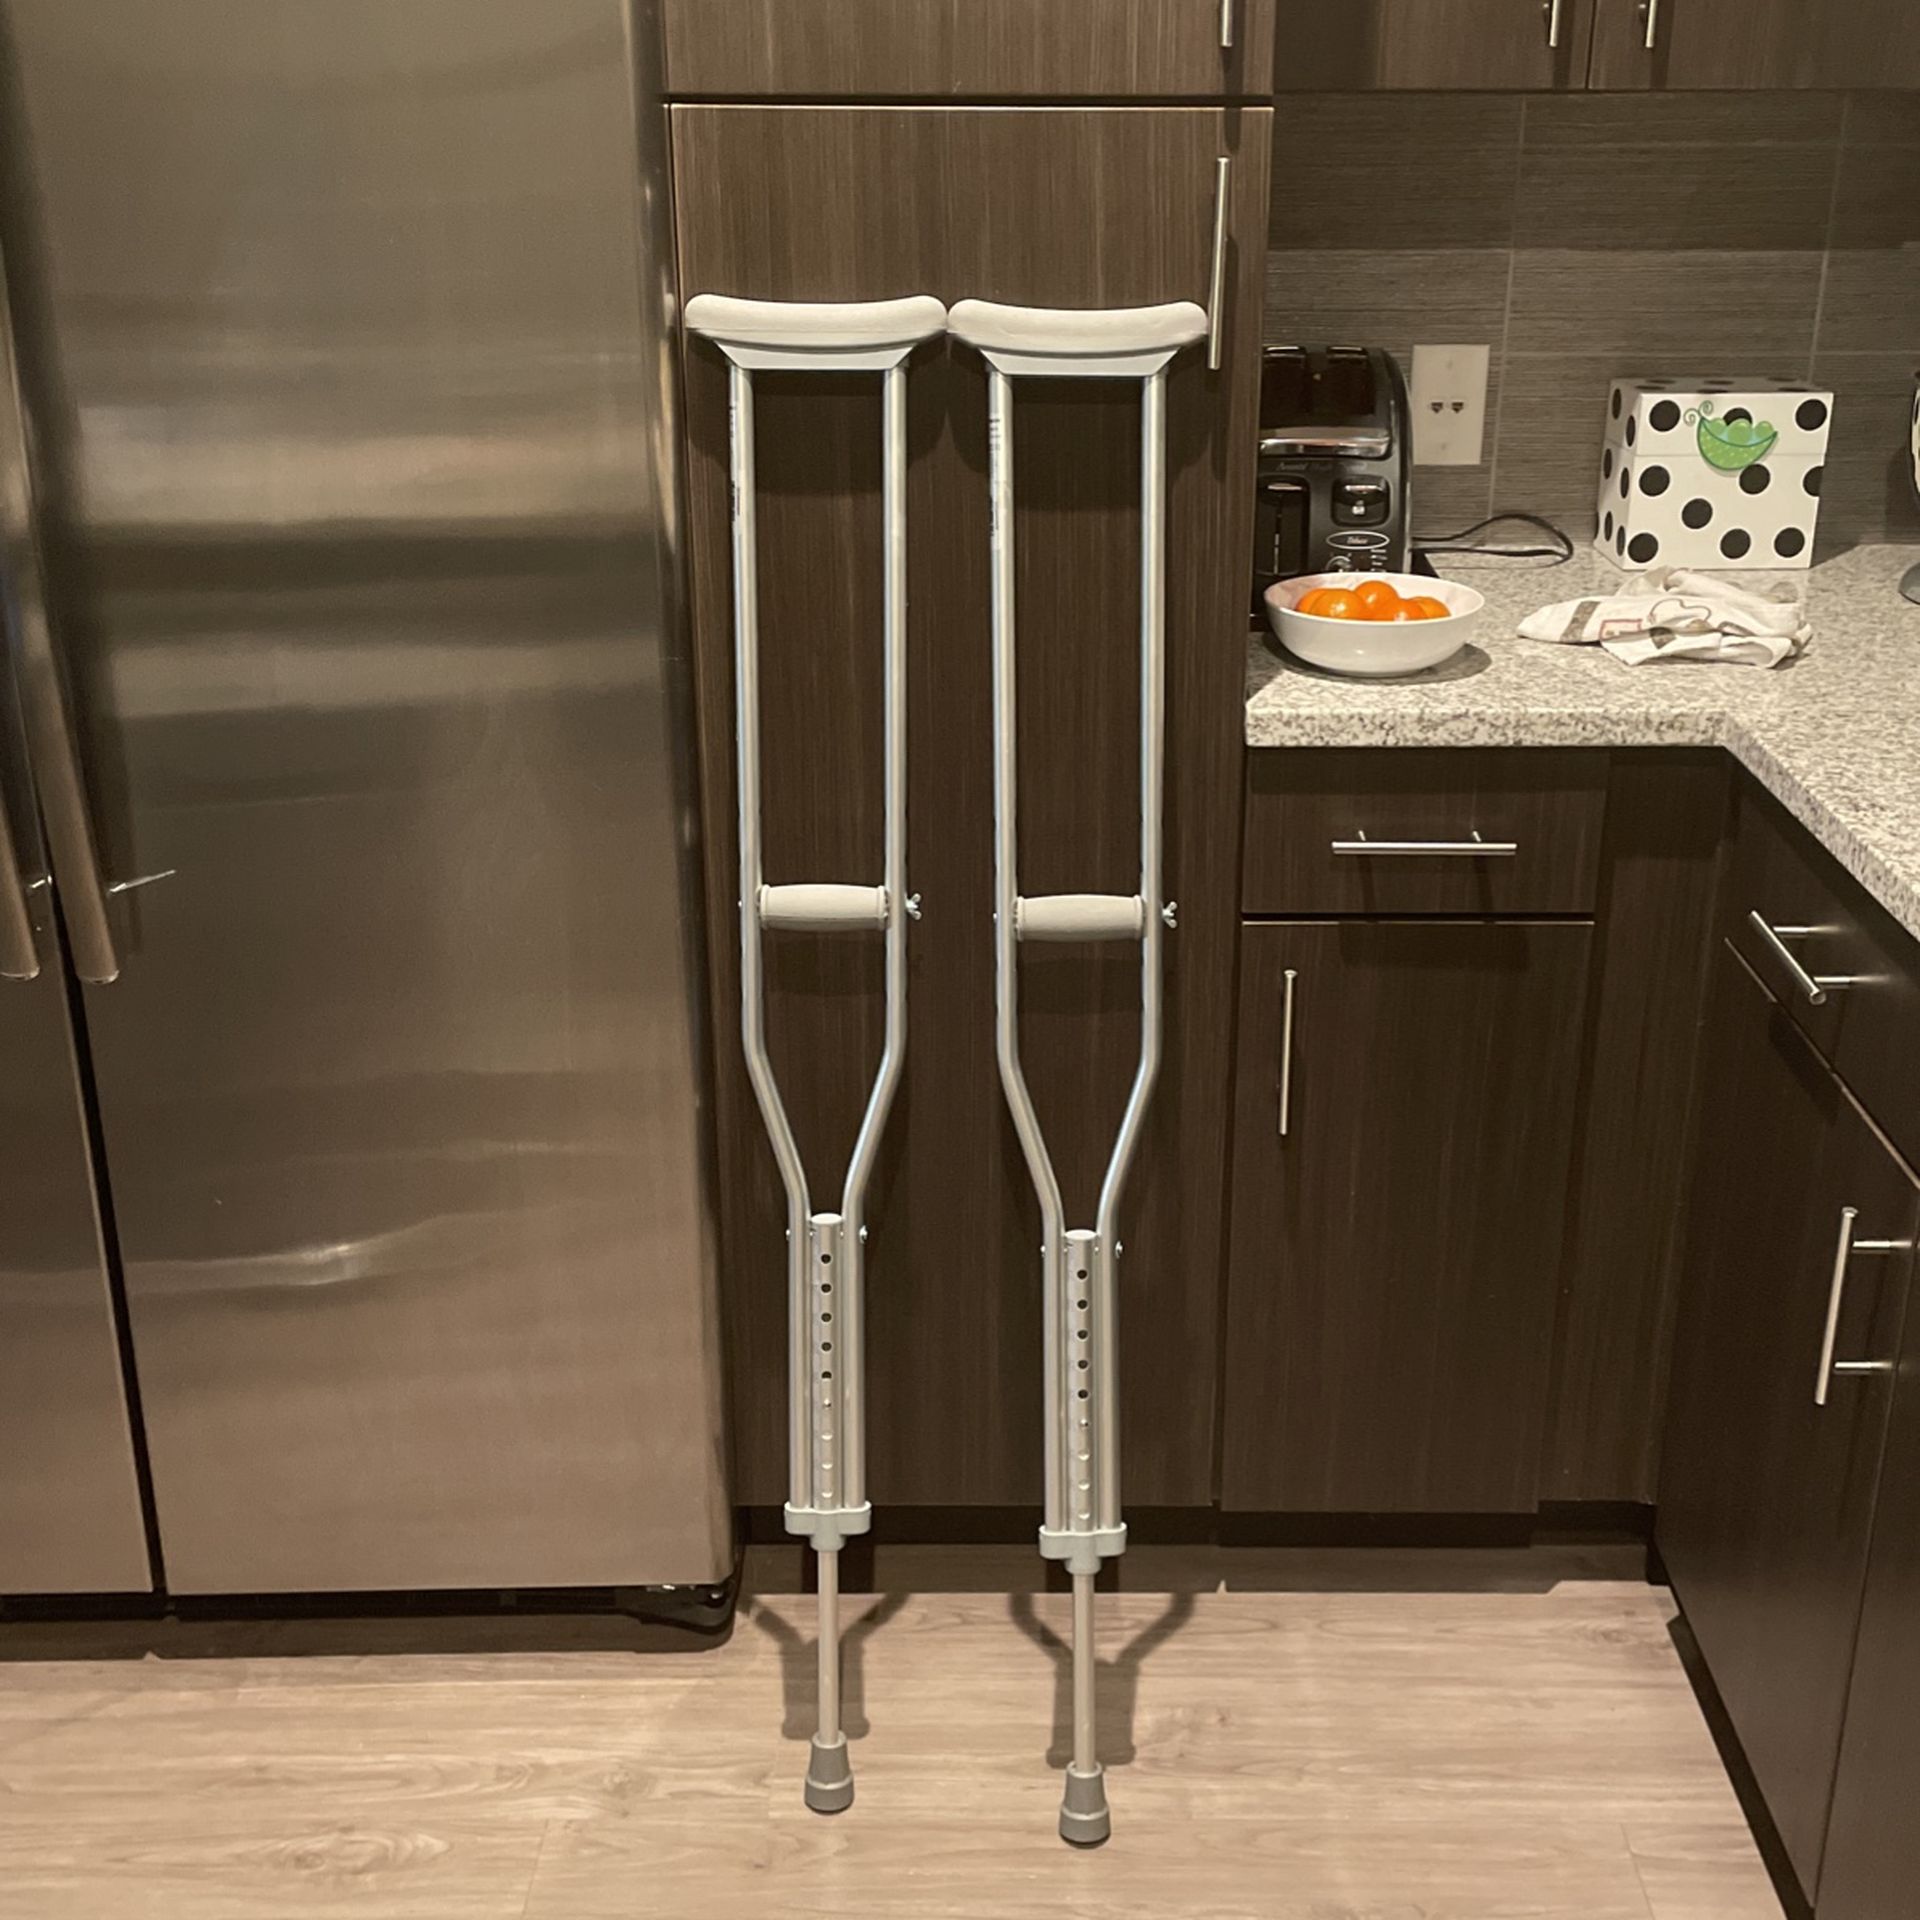   Crutches